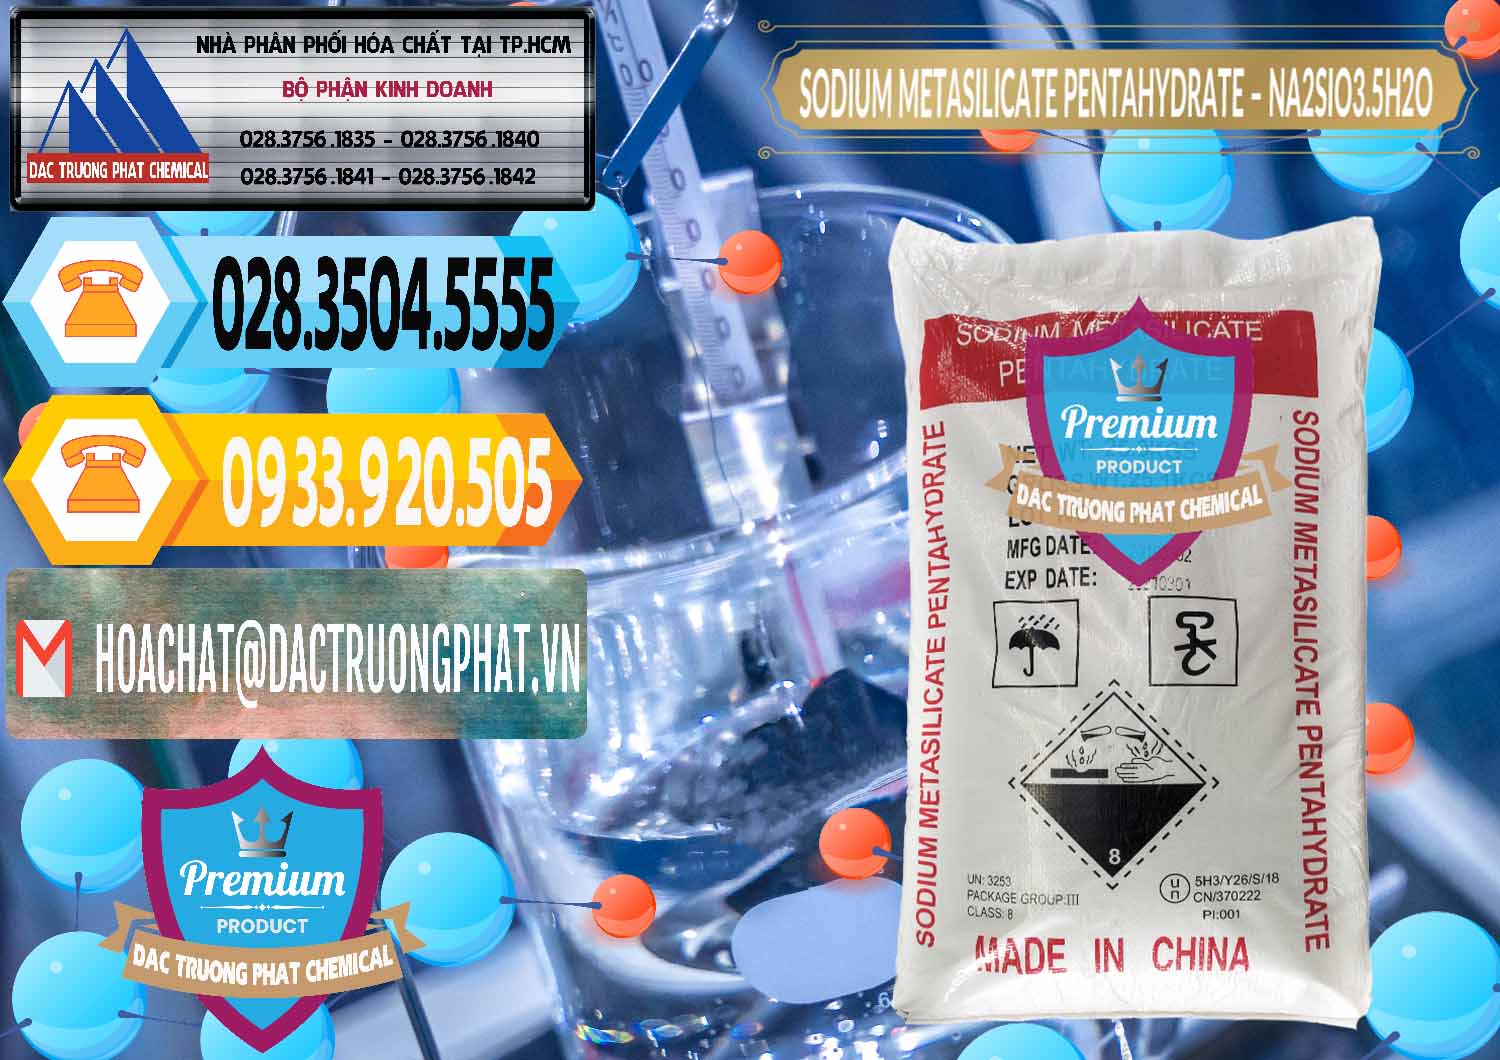 Cty phân phối ( bán ) Sodium Metasilicate Pentahydrate – Silicate Bột Trung Quốc China - 0147 - Công ty kinh doanh ( phân phối ) hóa chất tại TP.HCM - hoachattayrua.net